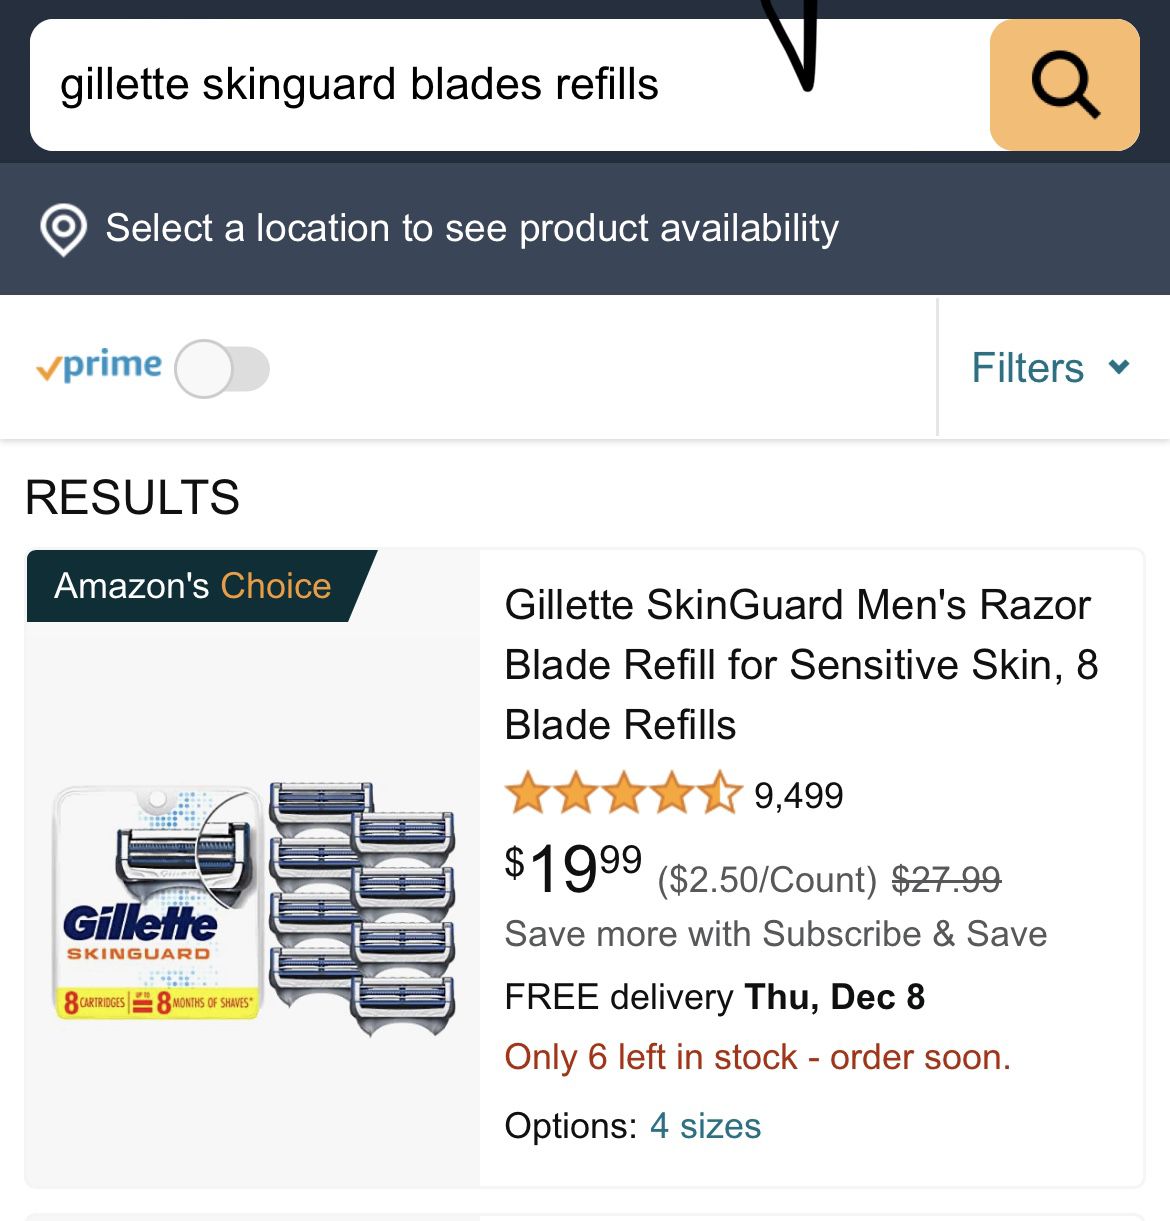 Gillette Skinguard 